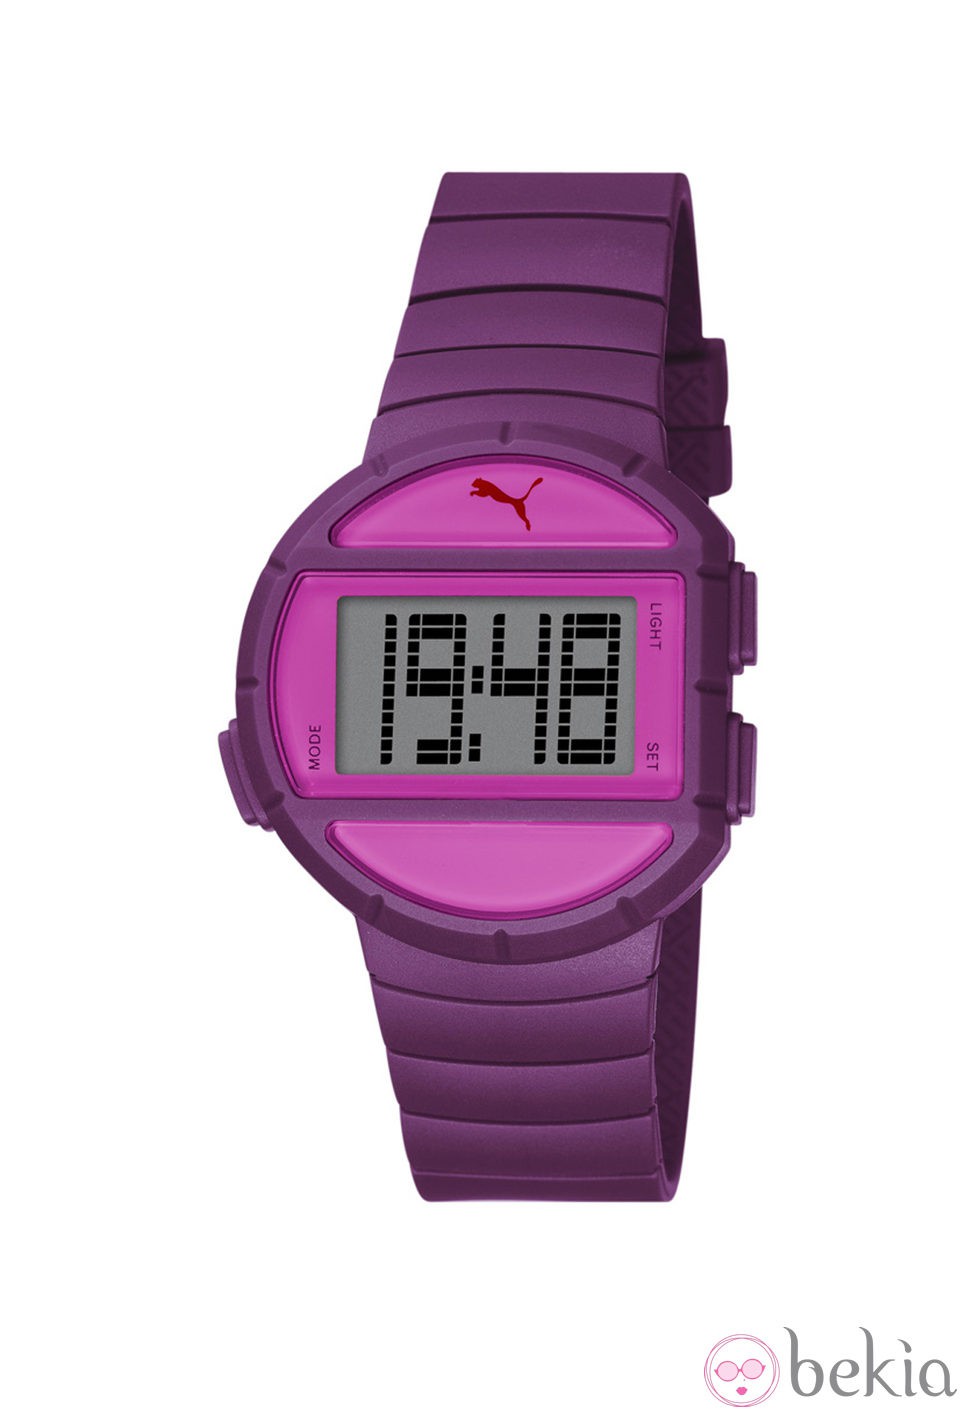 Reloj deportivo 'Half Time' de la firma Puma en color morado y fucsia